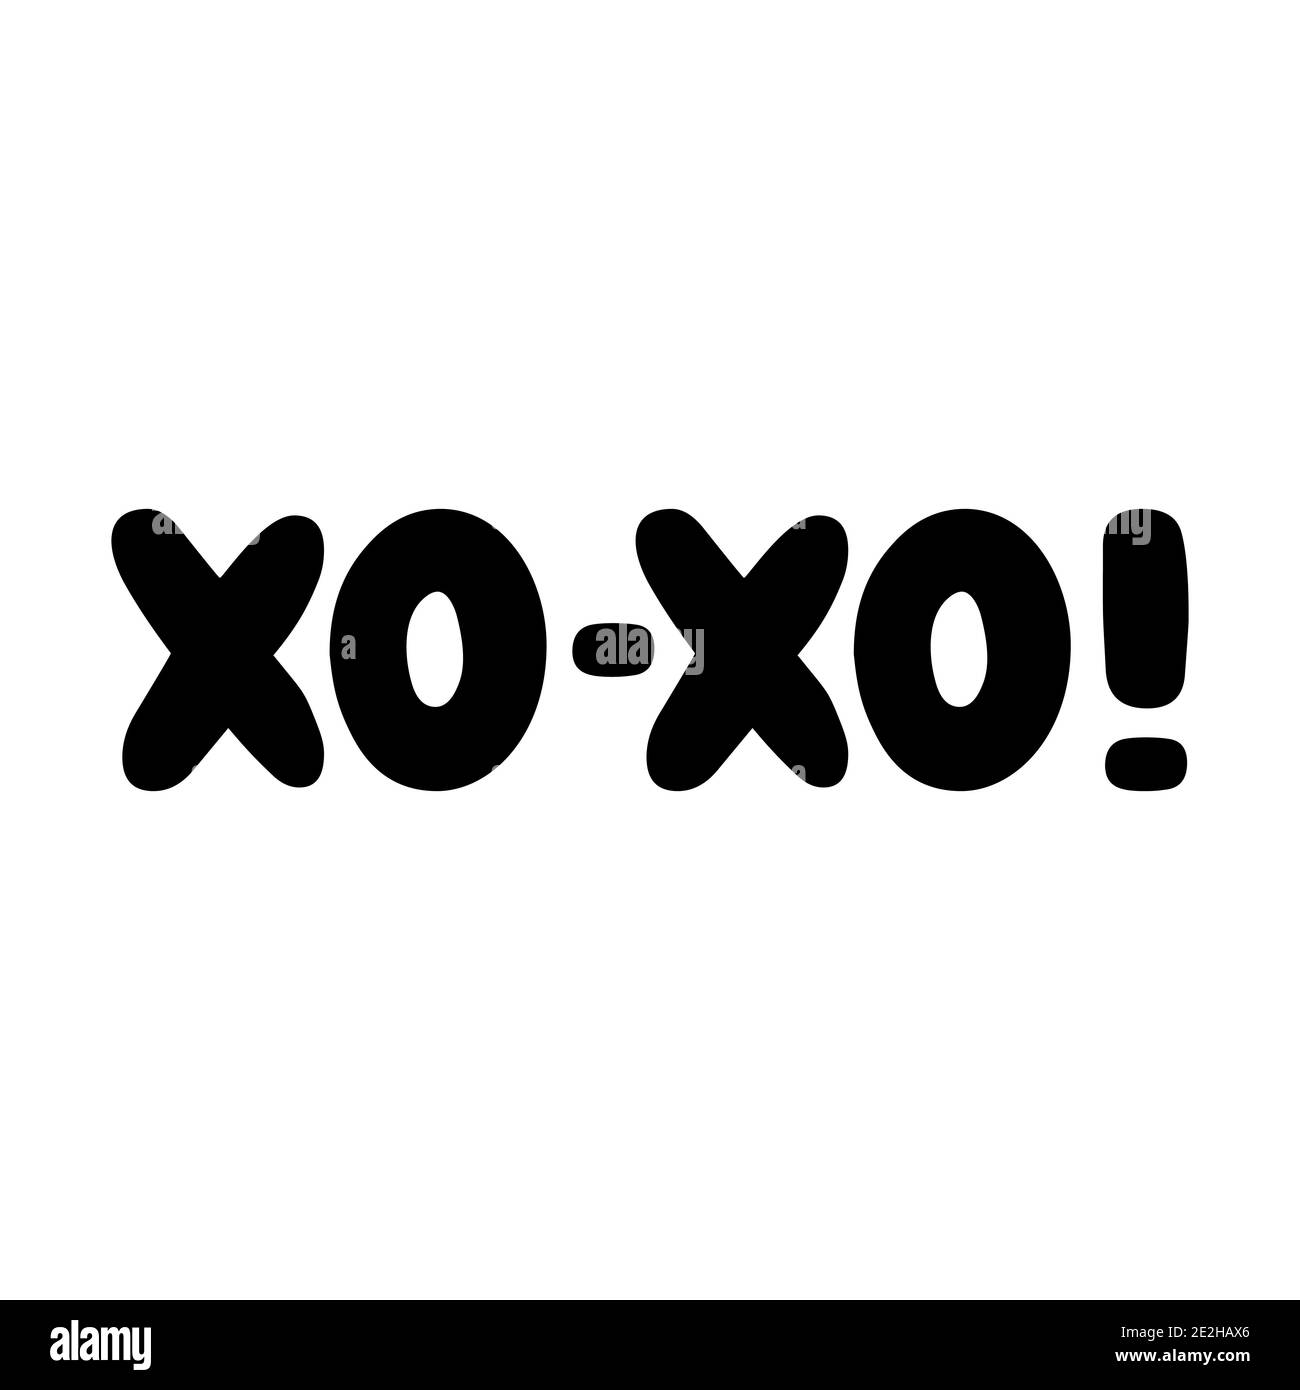 XO xo. Scritta roundish scritta a mano isolata su sfondo bianco. Illustrazione Vettoriale